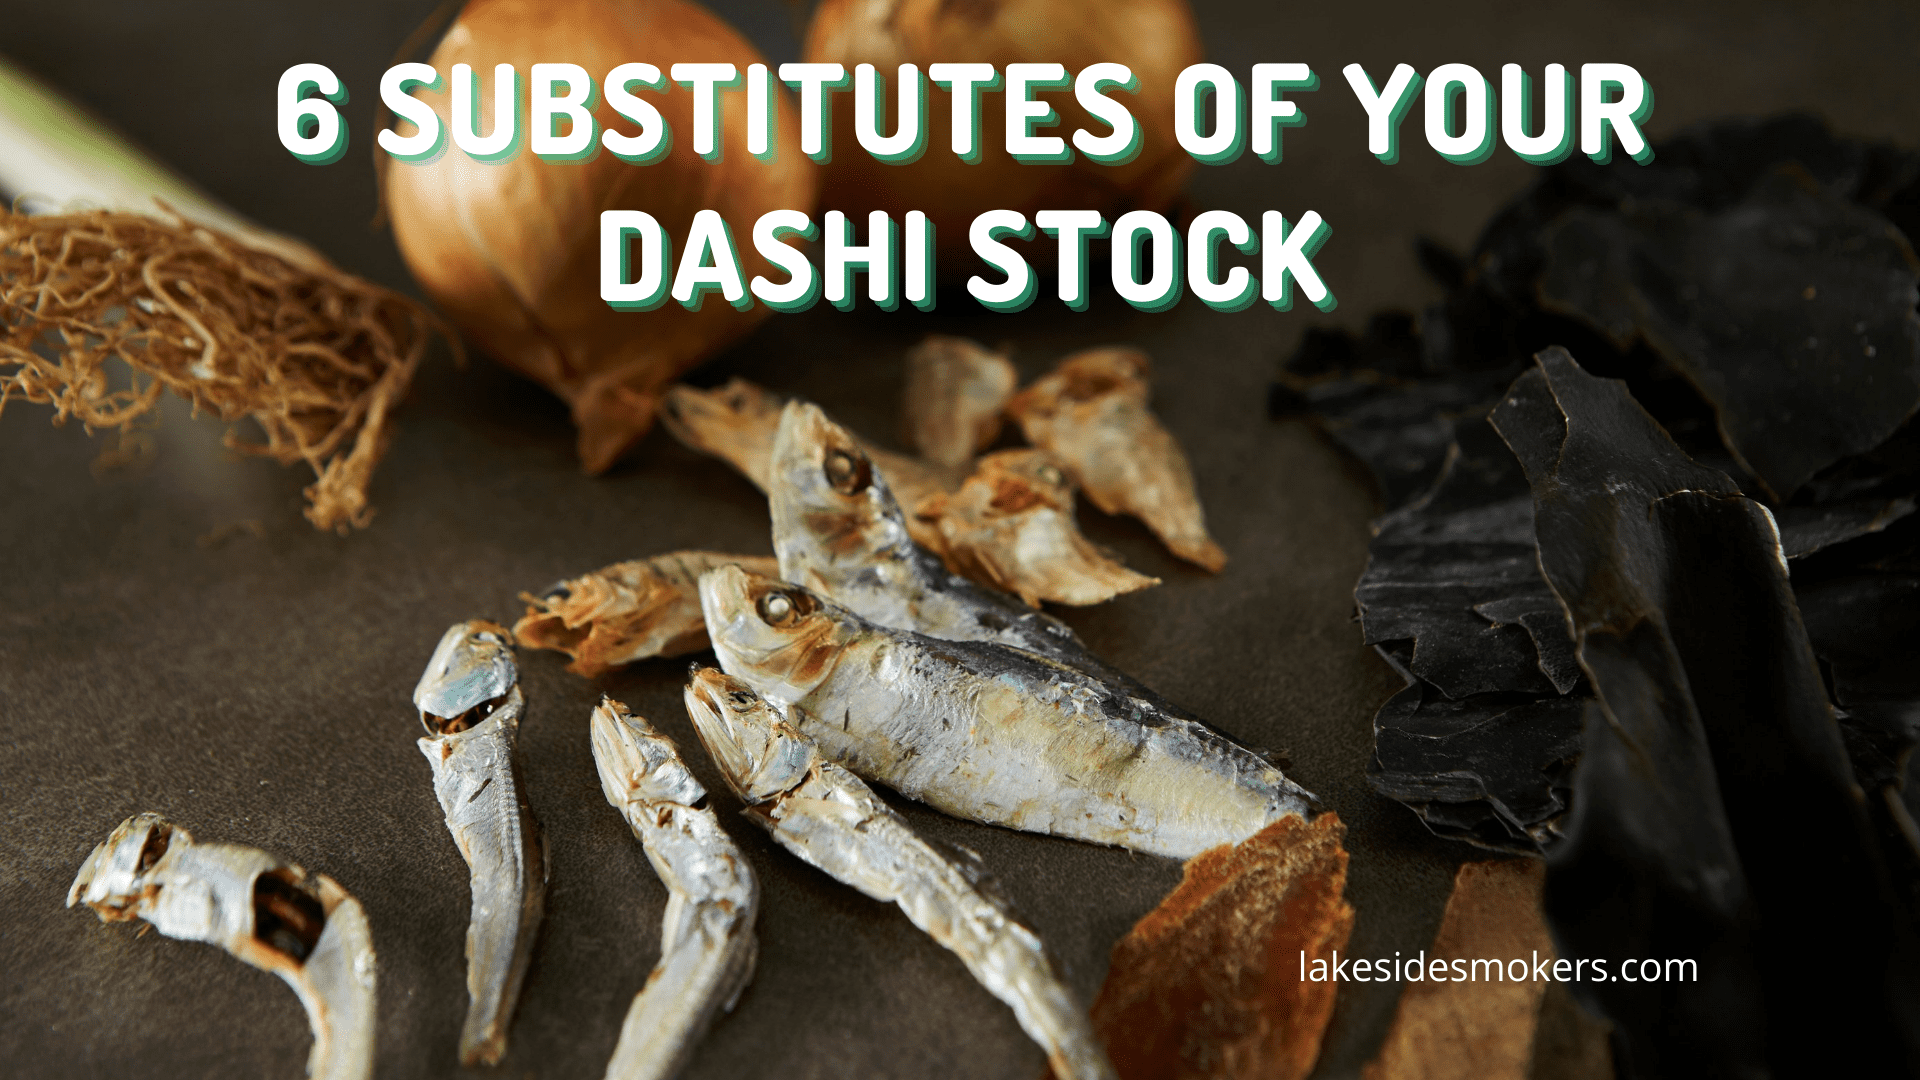 Vous n'avez pas de stock de dashi ? Utilisez plutôt ces 6 substituts secrets !